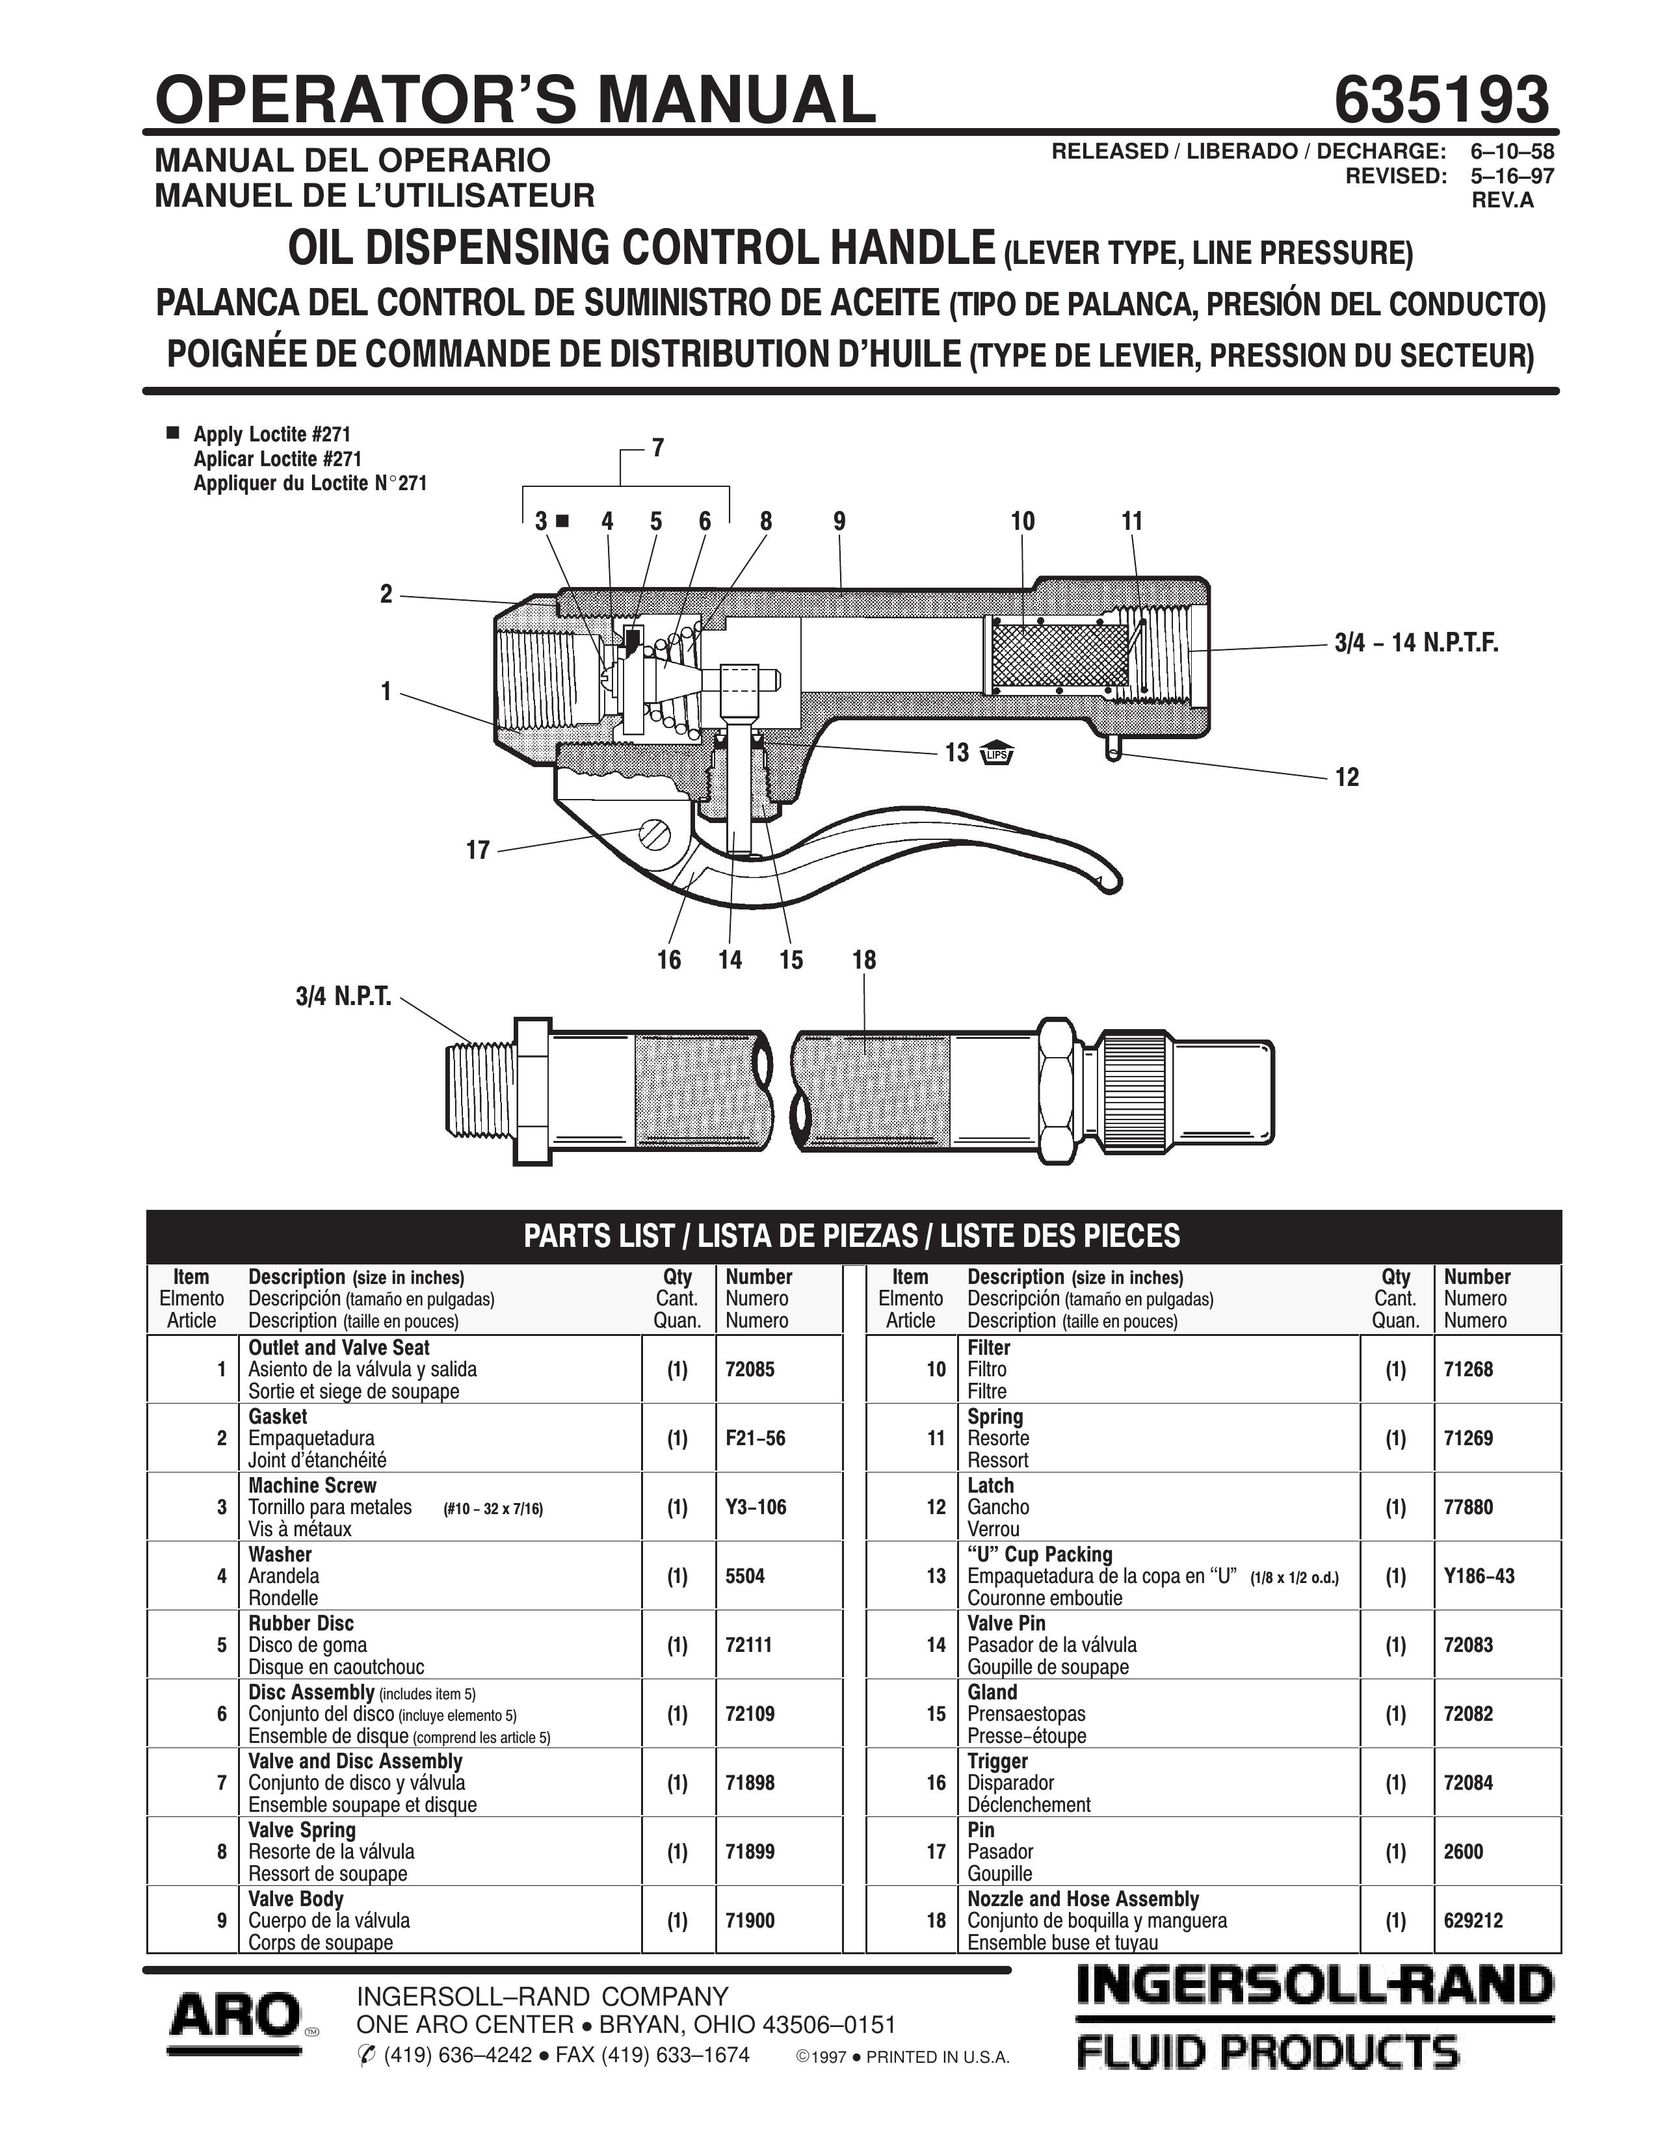 Ingersoll-Rand 635193 Fan User Manual